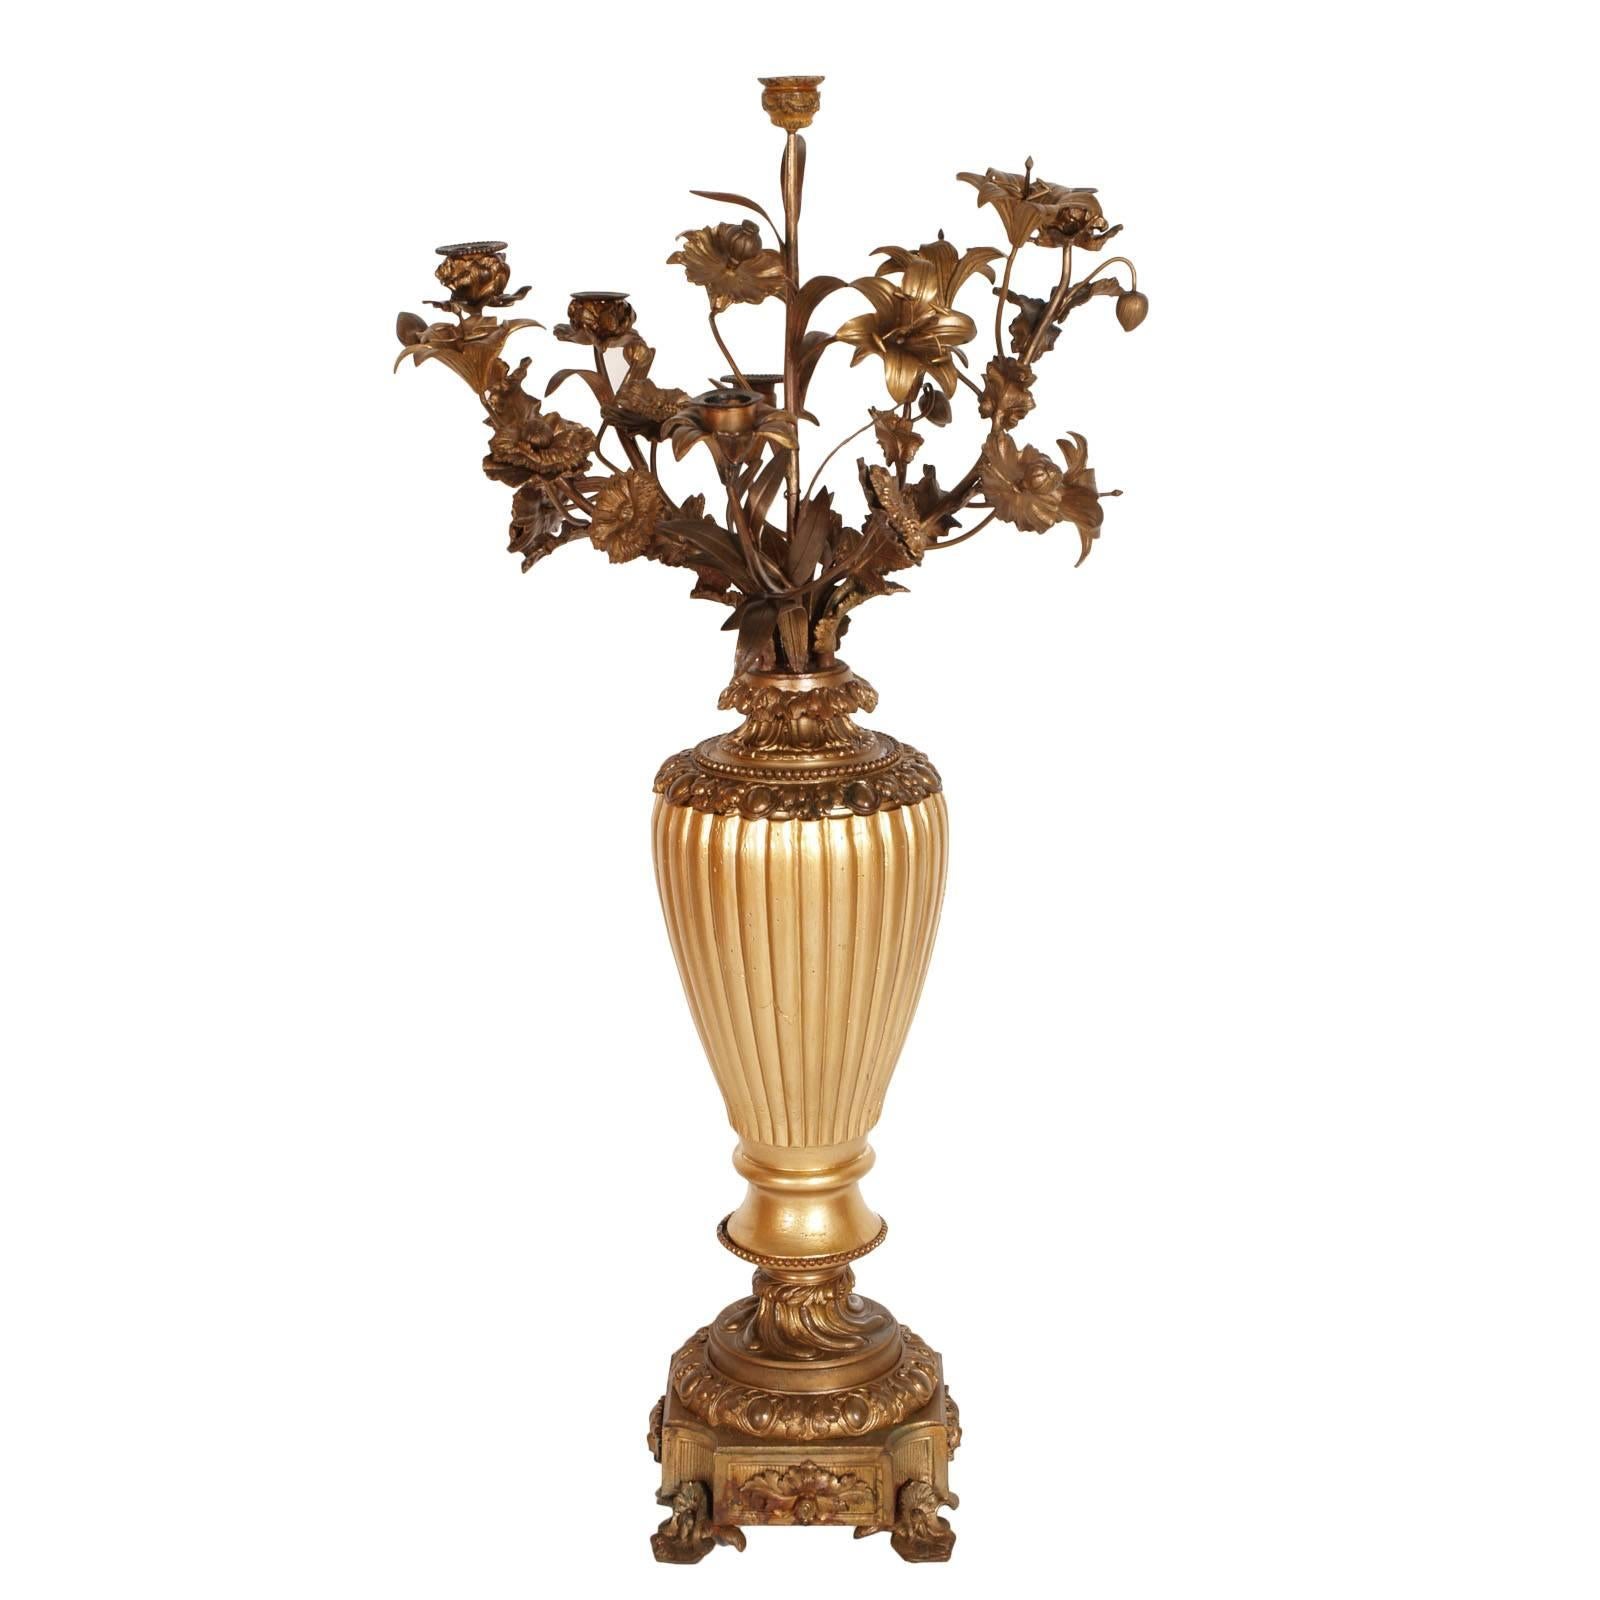 Sechs Kerzenleuchter-Kandelaber aus vergoldeter Bronze und vergoldetem Nussbaumholz, 18. Jahrhundert